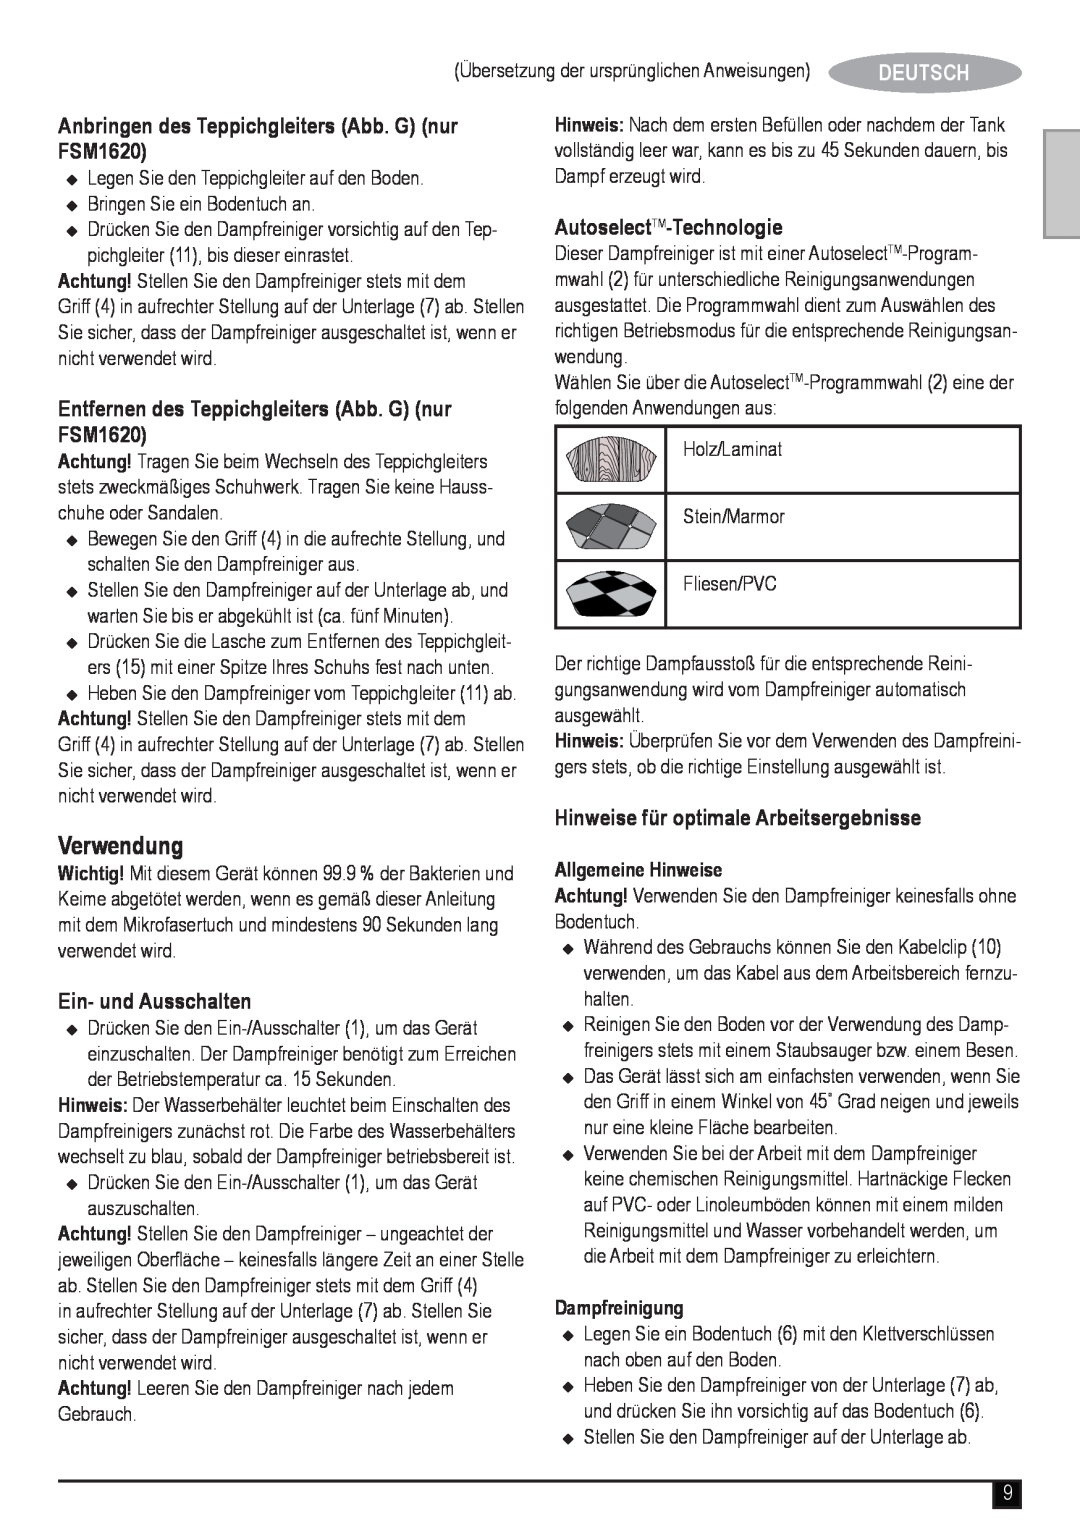 Black & Decker Verwendung, Anbringen des Teppichgleiters Abb. G nur FSM1620, Ein- und Ausschalten, Allgemeine Hinweise 